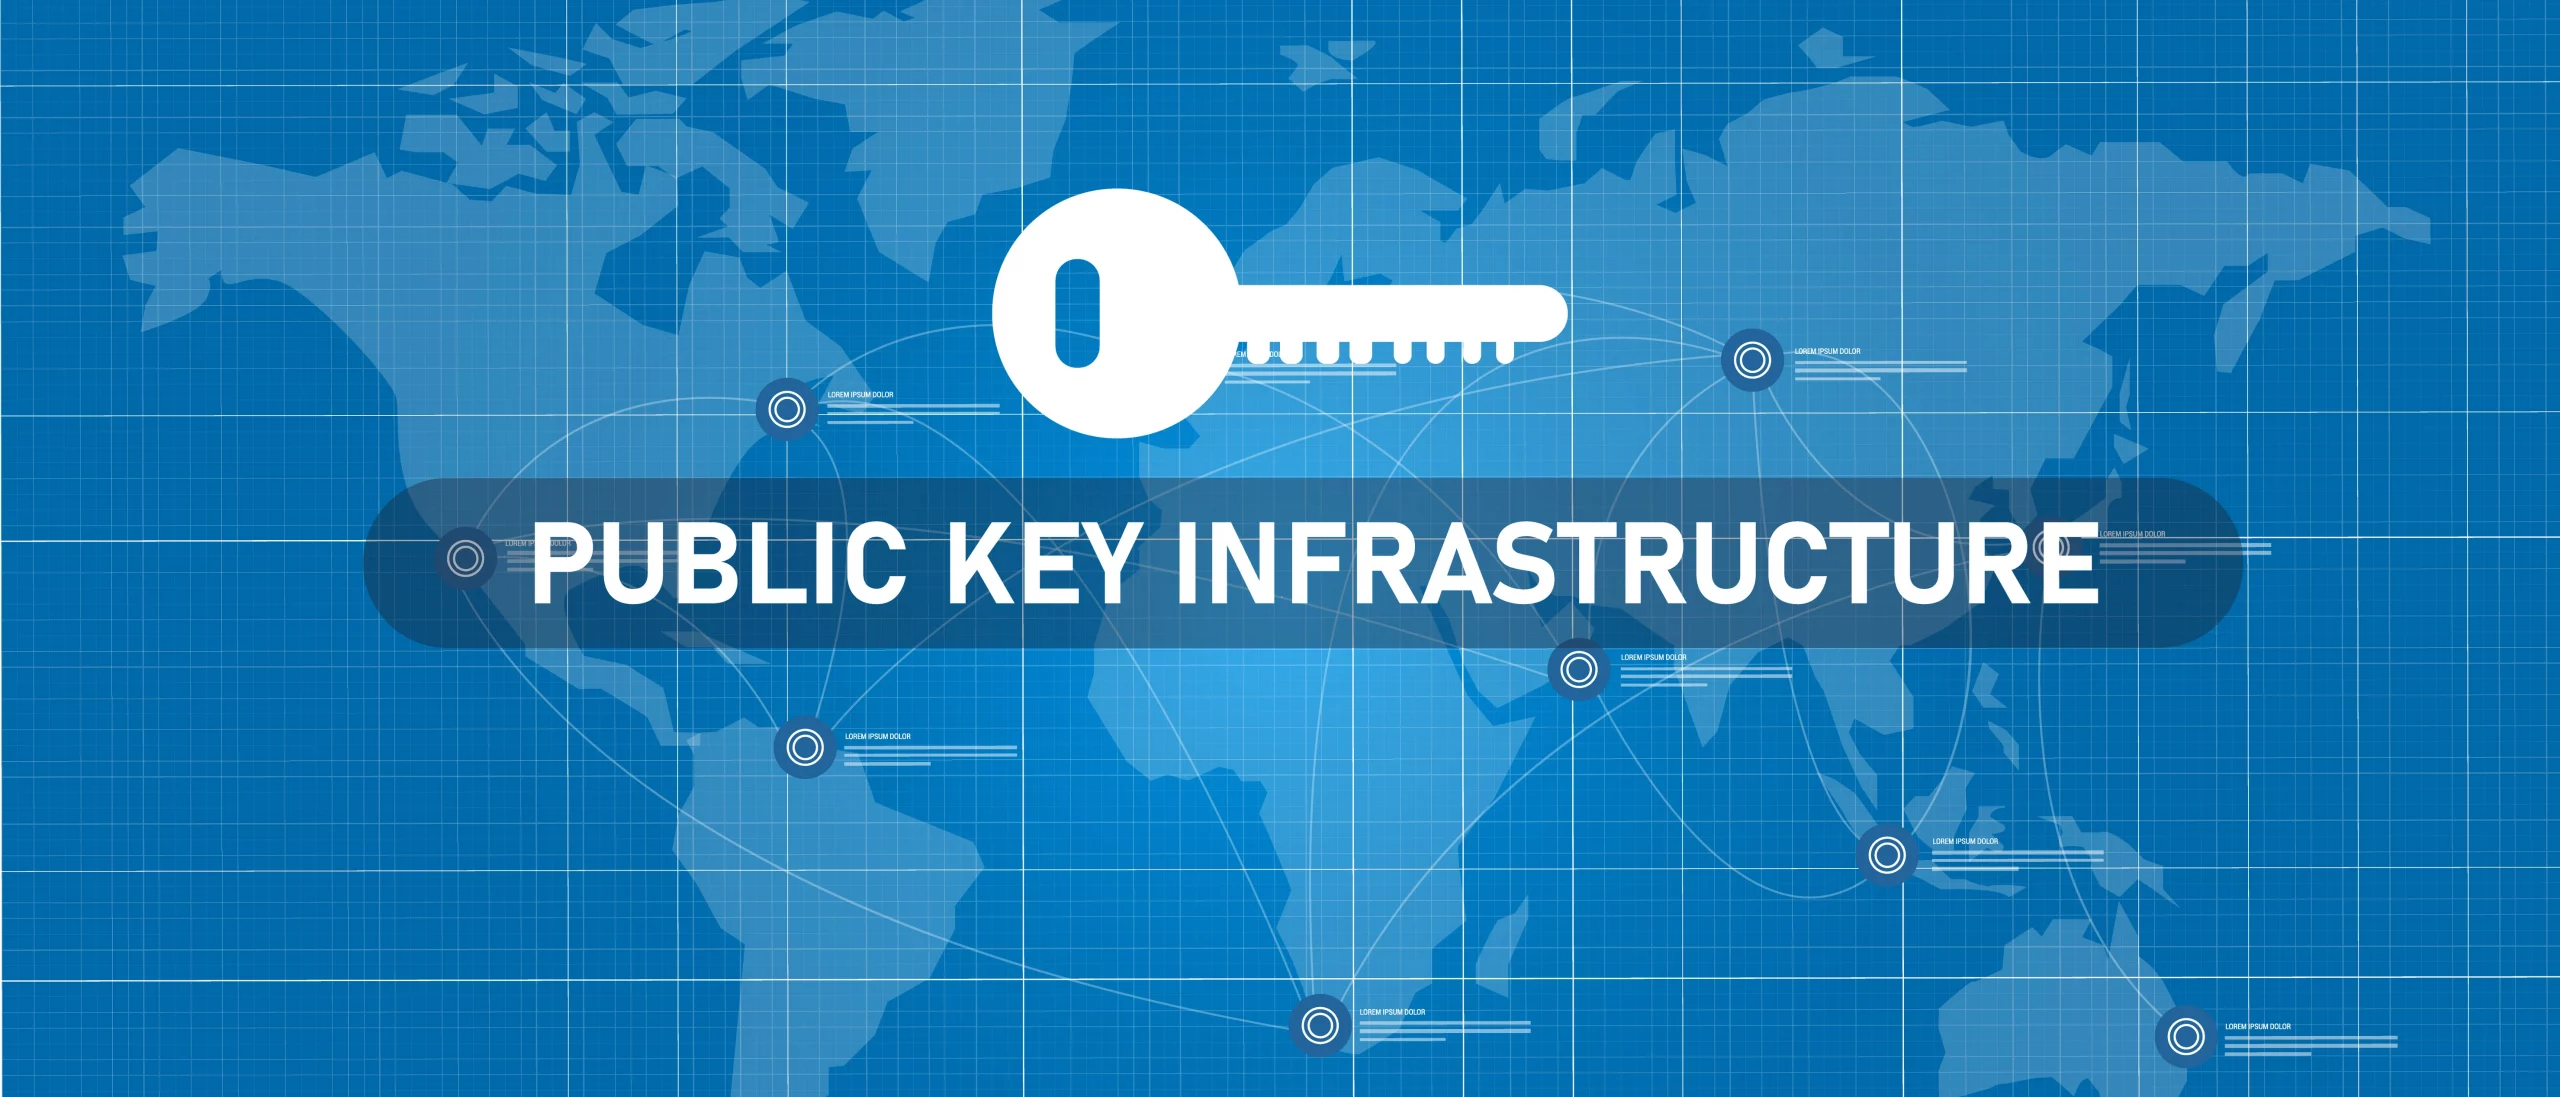 image clef sur fond de carte, texte "Public Key Infrastructure"